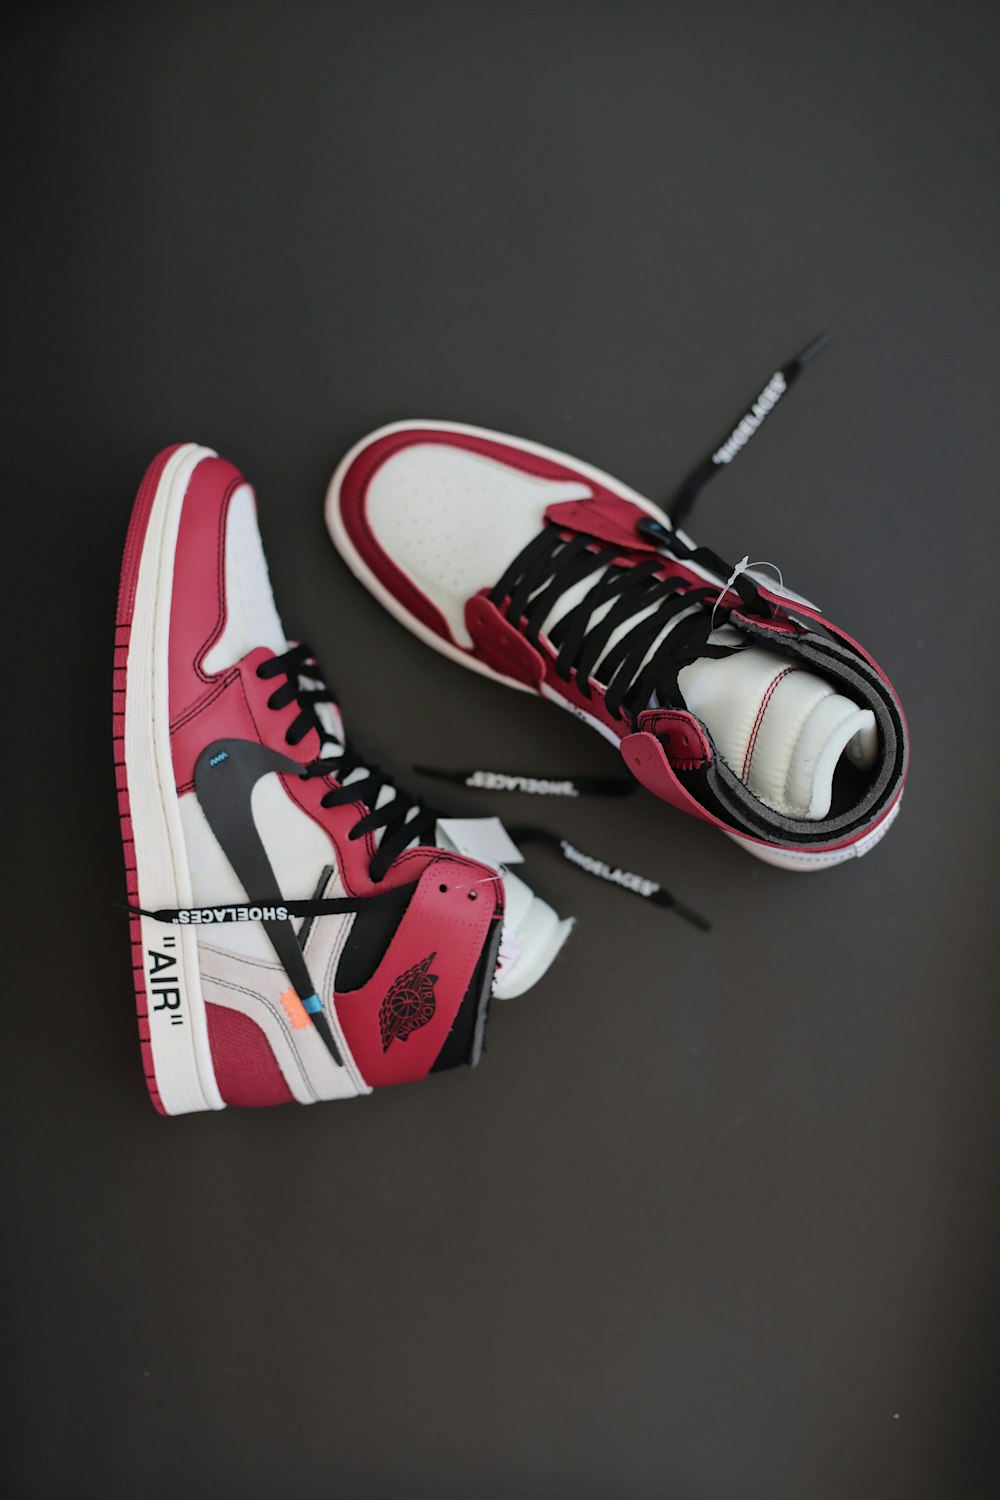 Estoy orgulloso Derecho chocar Foto par de zapatos deportivos Nike Air Jordan rojos, blancos y negros –  Imagen Vestir gratis en Unsplash